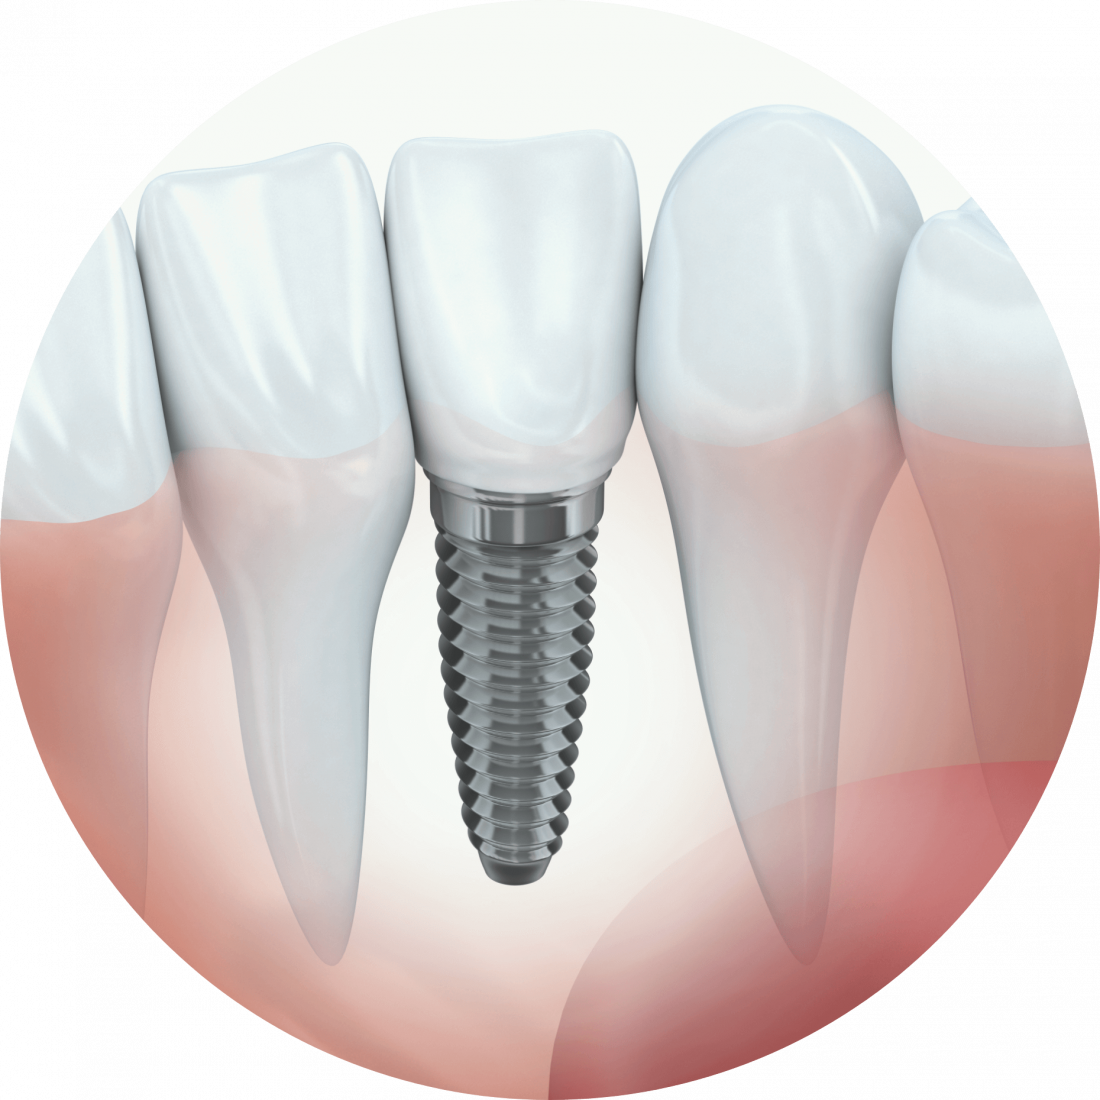 Procedure details: Implants treatment